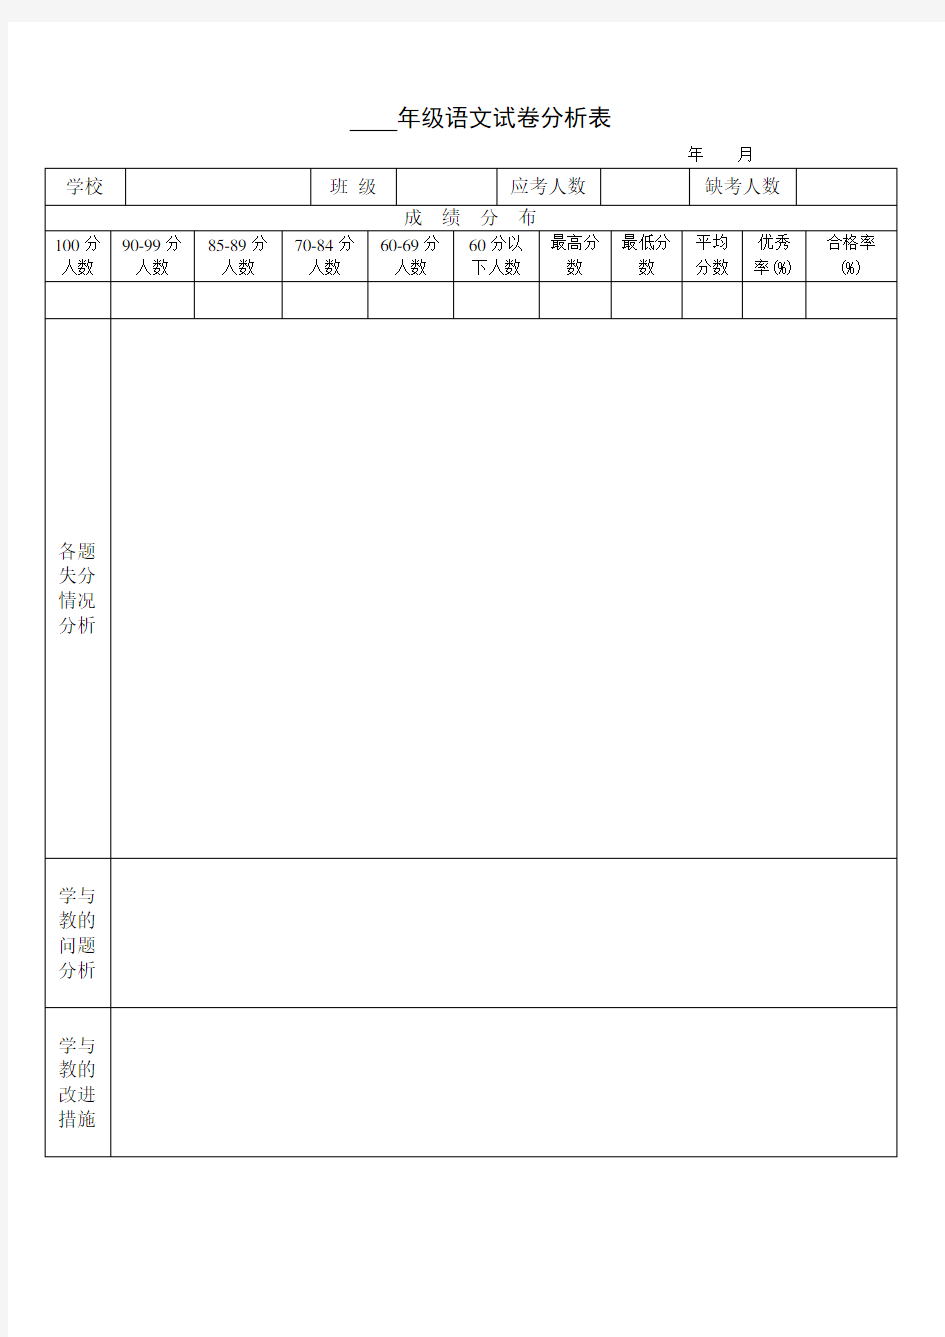 小学语文试卷分析表 (2)